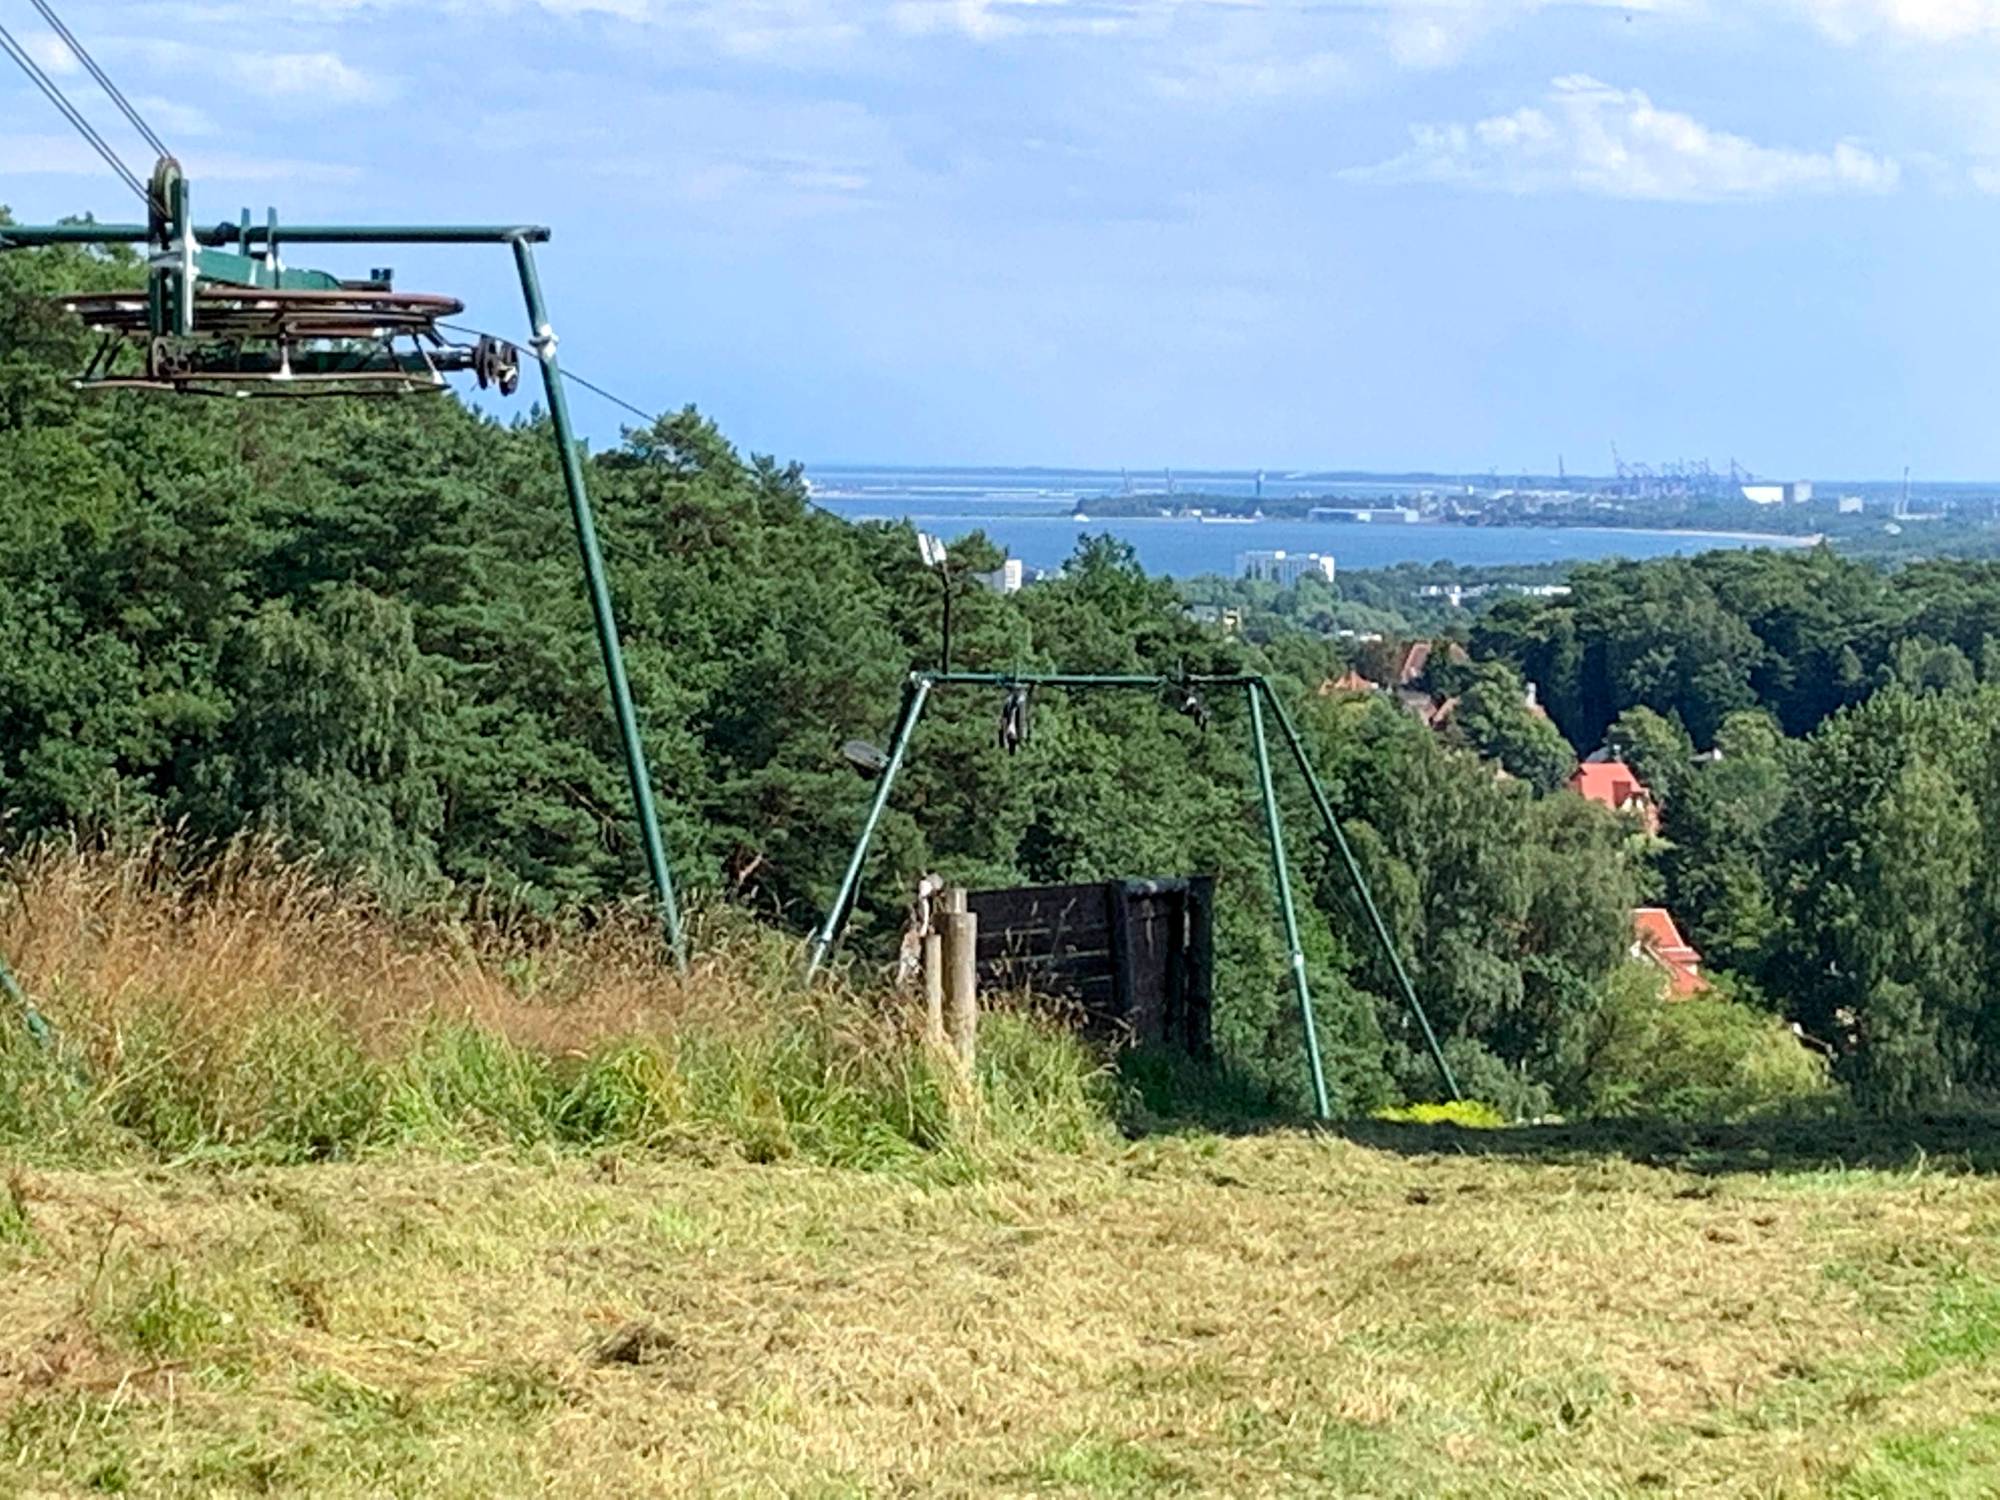 Wyciąg narciarski na Łysej Górze. W oddali Zatoka Gdańska